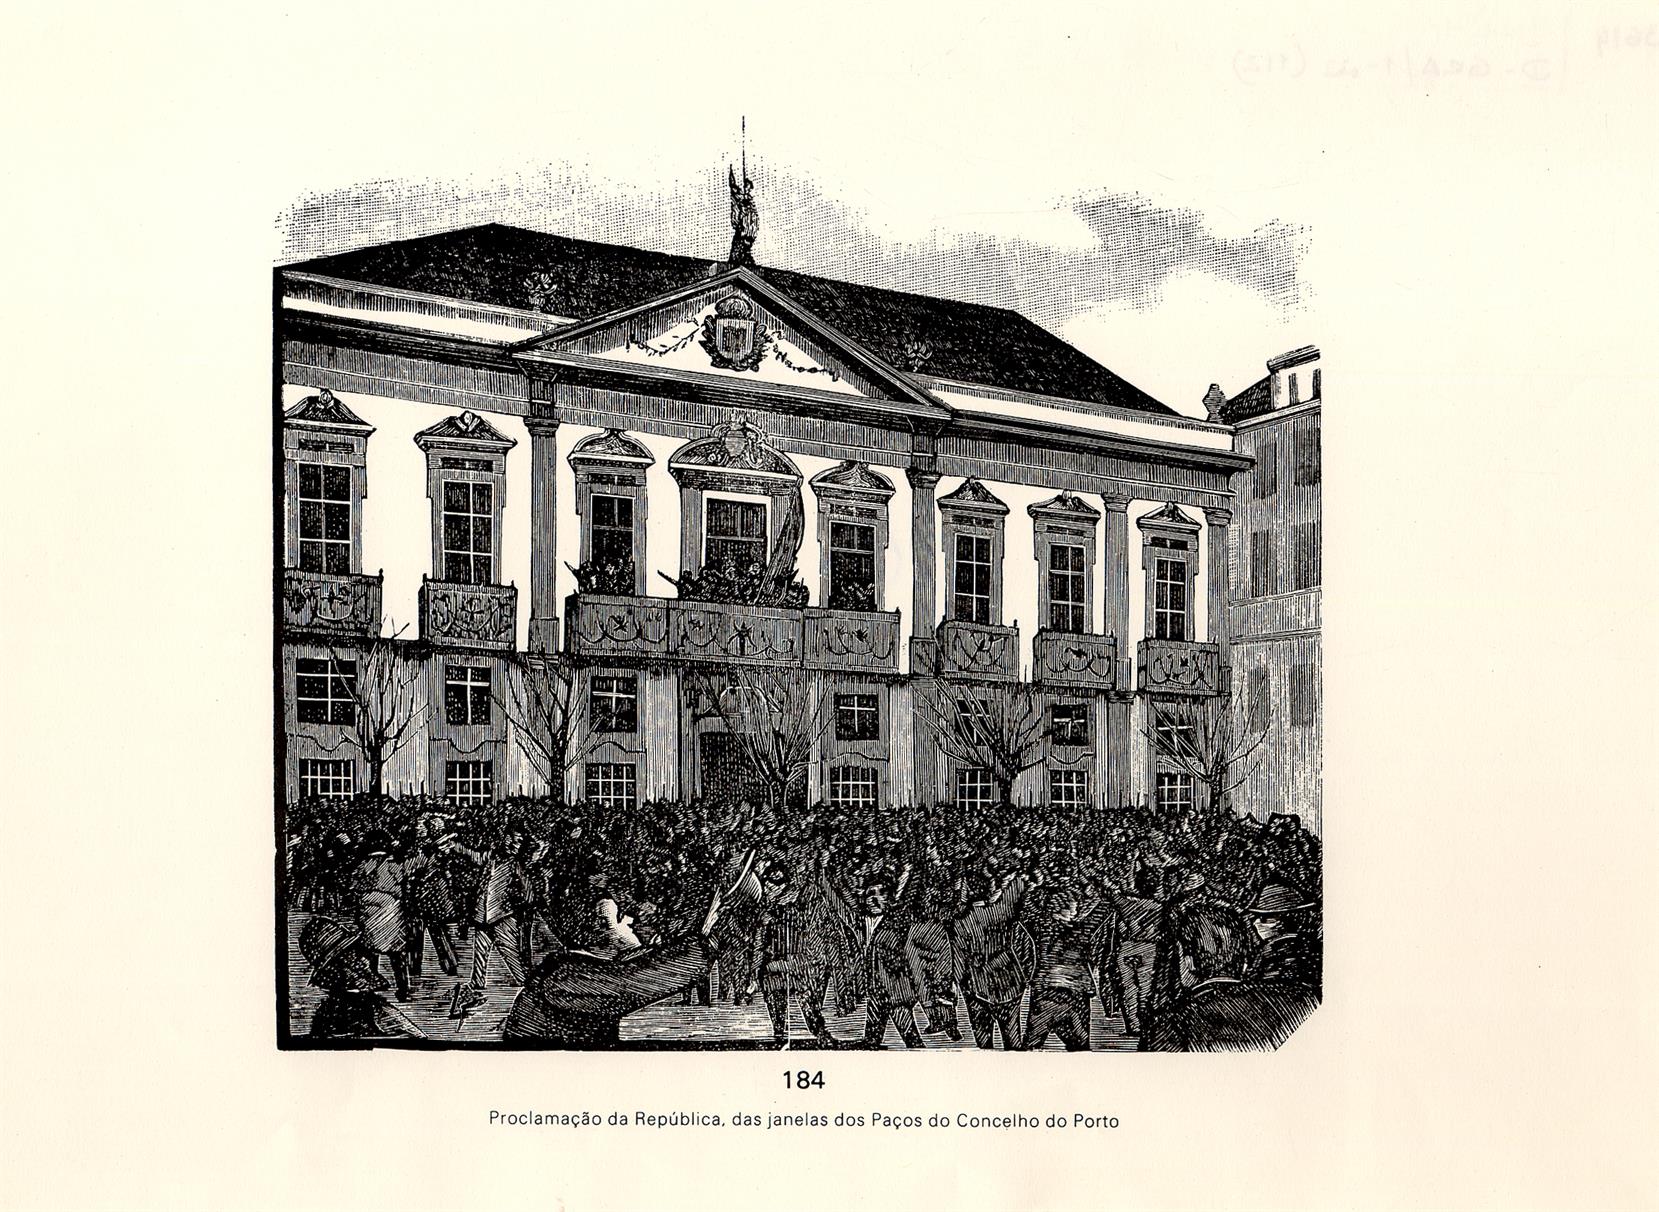 Proclamação da República, das janelas dos Paços do Concelho do Porto